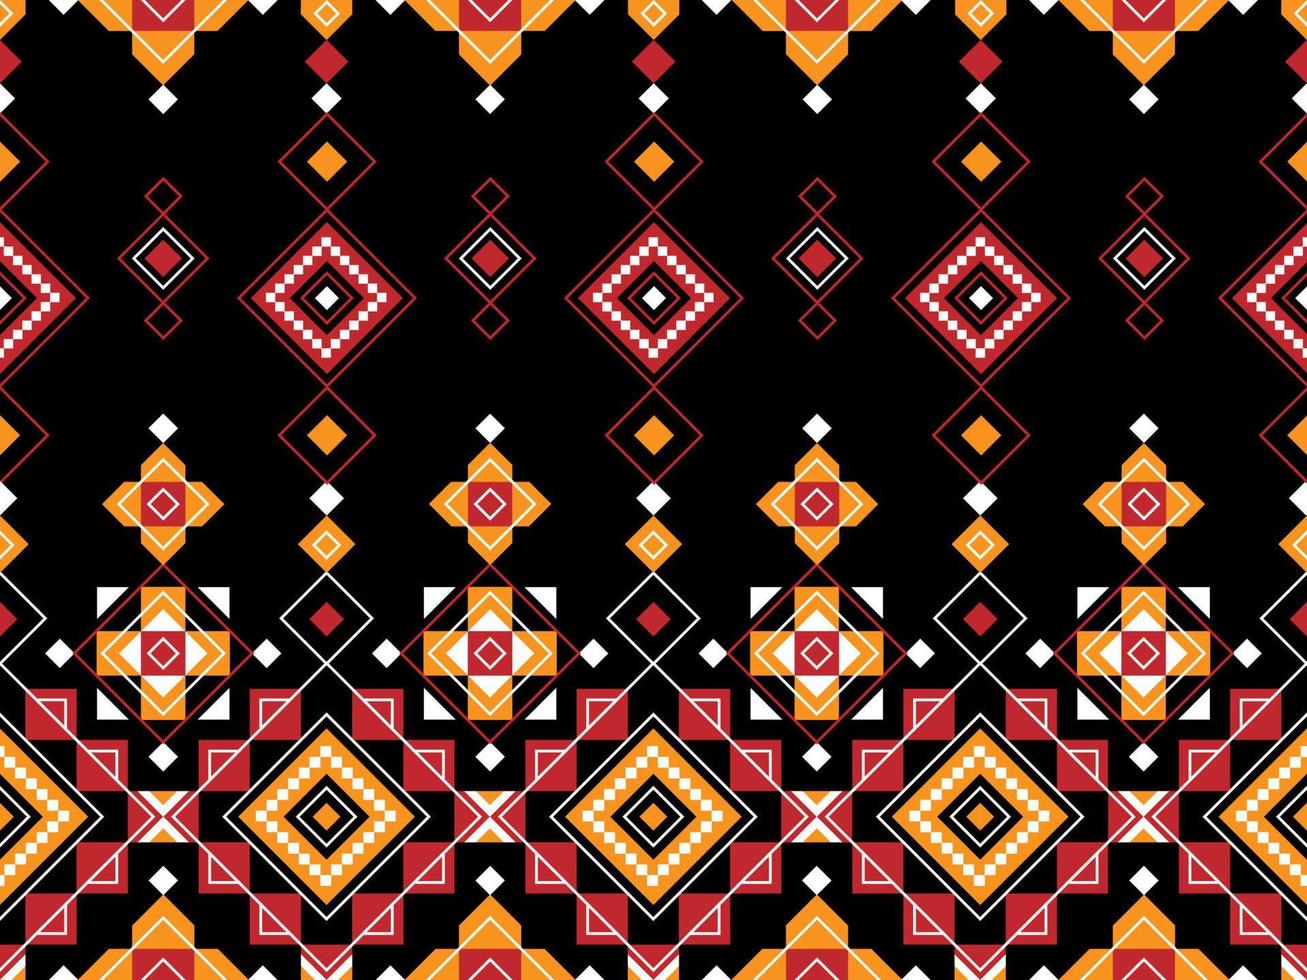 abstracto geométrico tribal étnico ikat folklore diamantes oriental patrón sin costuras diseño tradicional para fondo, alfombra, papel pintado, ropa, tela, envoltura, impresión, batik, folk, tejer ilustración vectorial vector